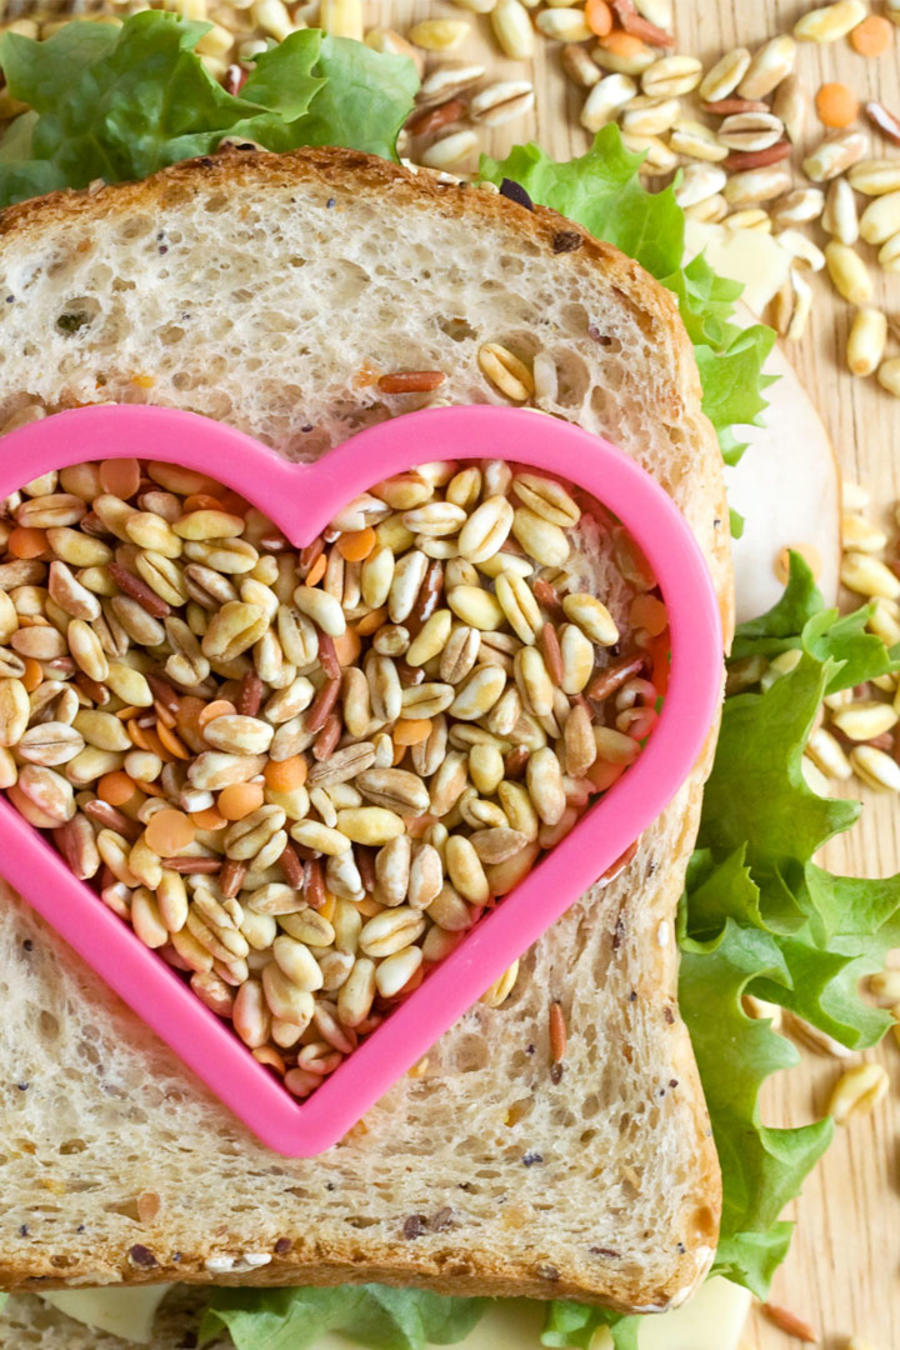 Sándwich de pan integral con semillas y corazón